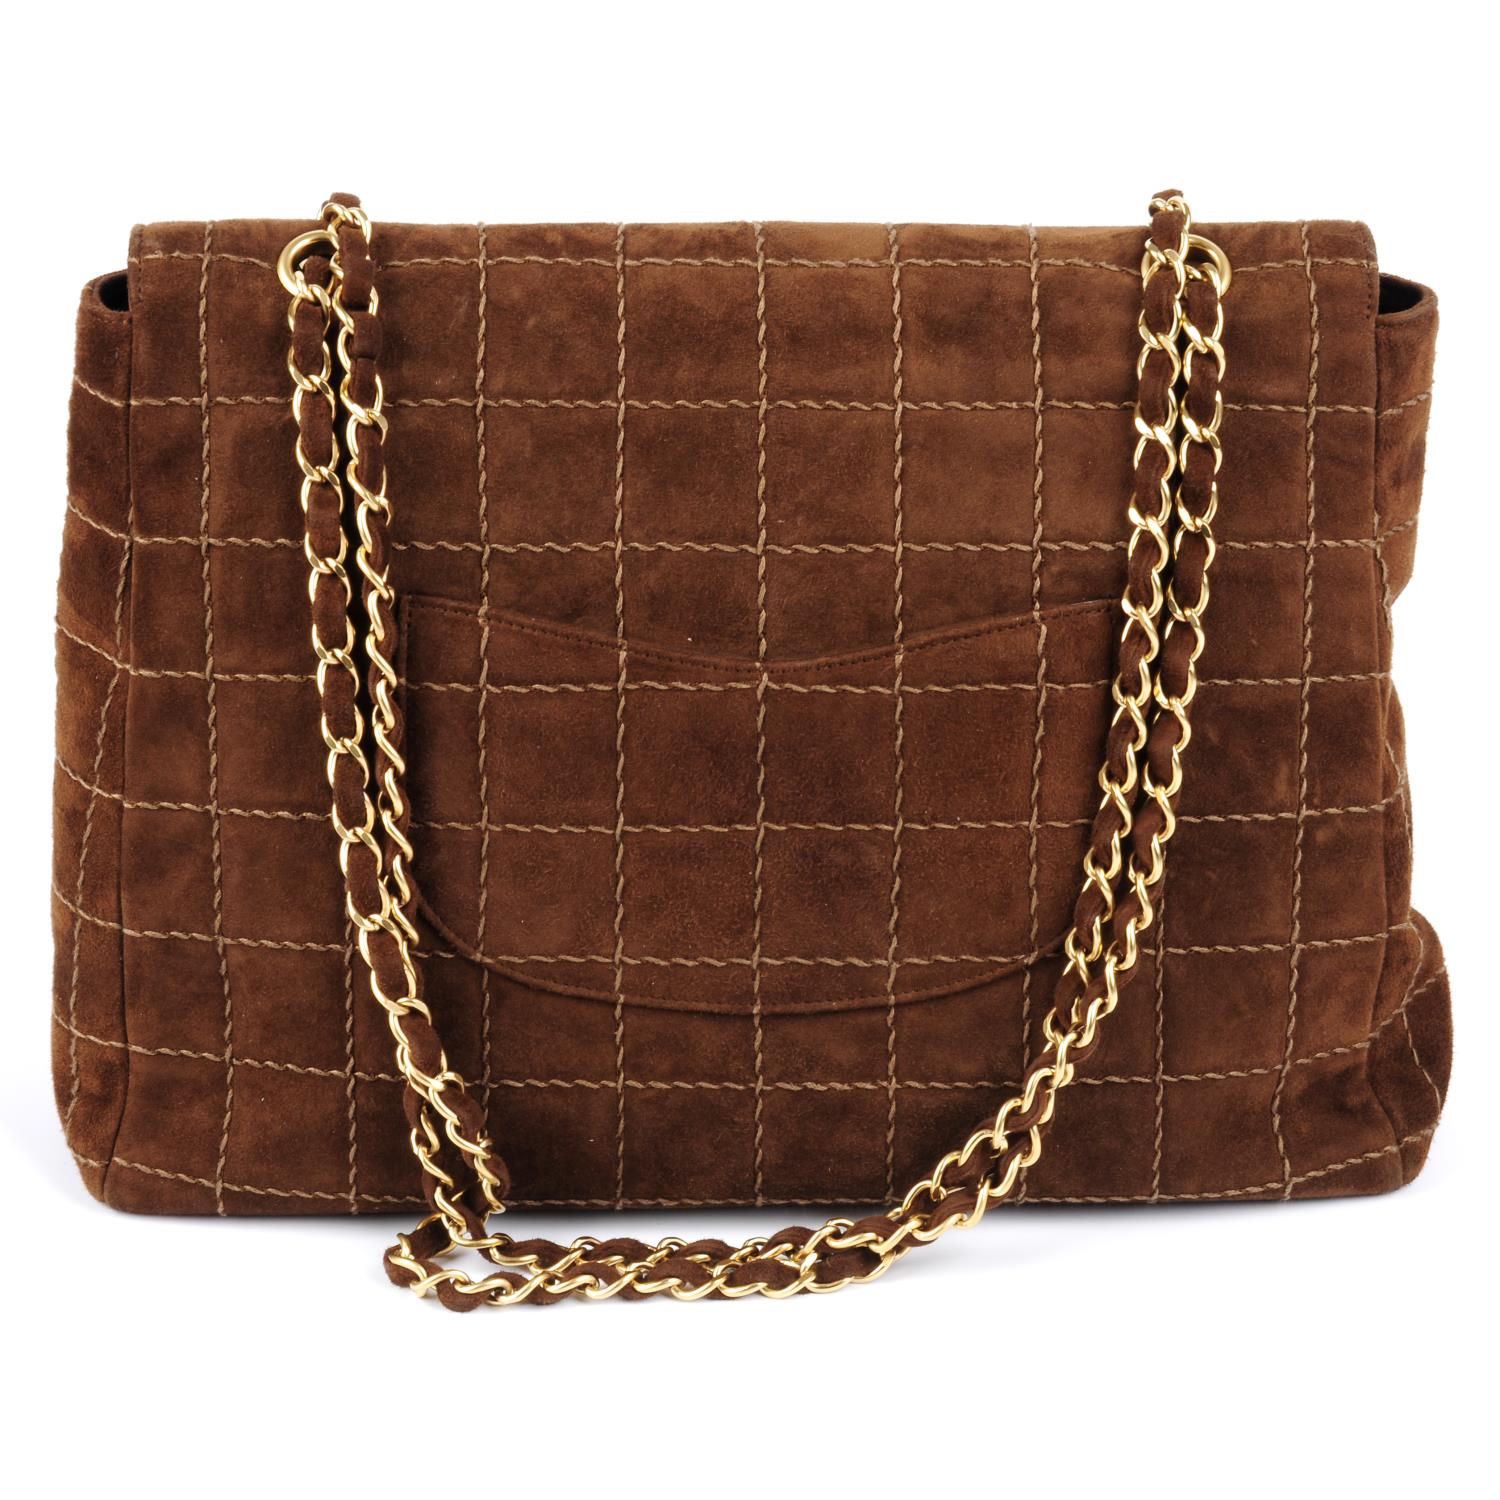 CHANEL - a brown suede handbag. - Image 2 of 5